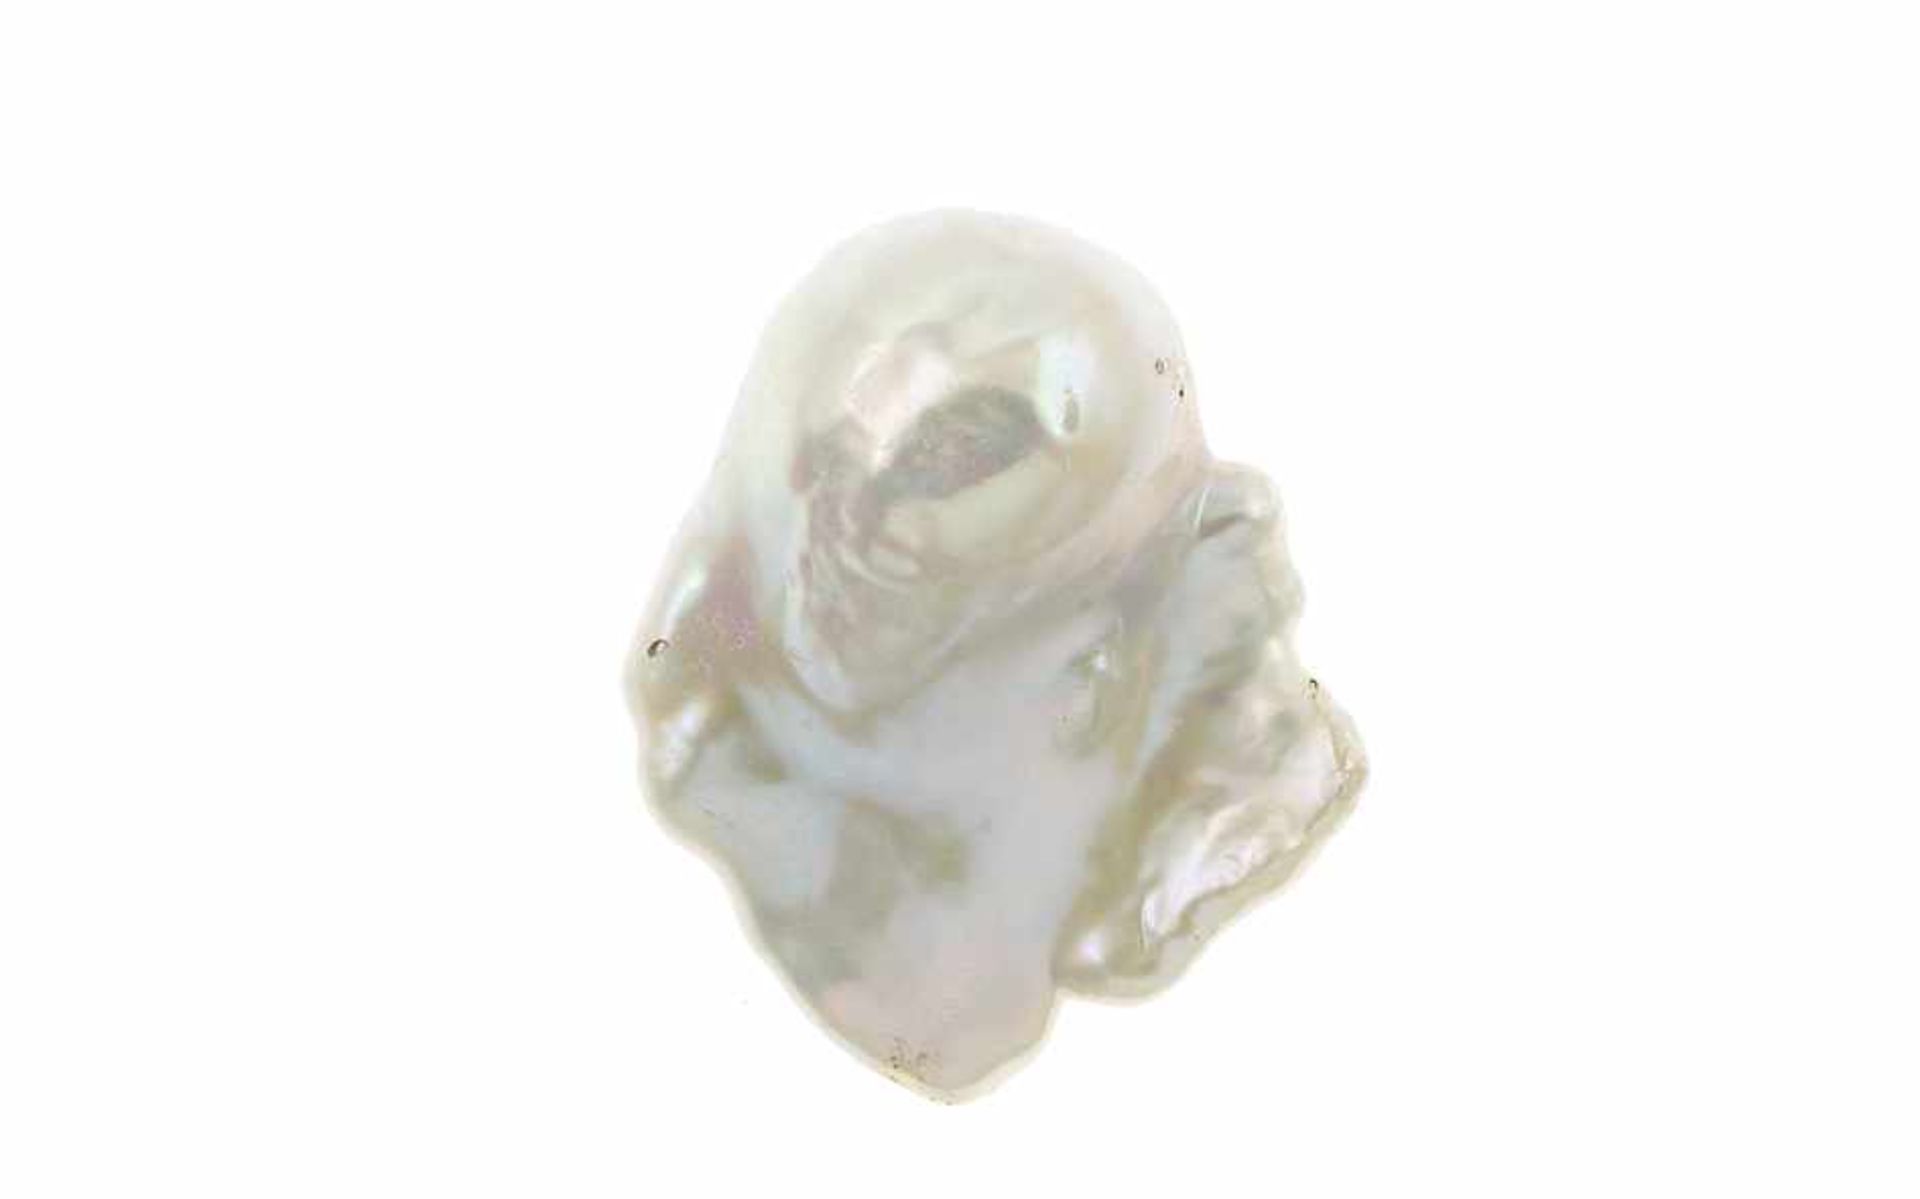 Süßwasser Perle10,33 g, Barock Form, Farbe Weiß mit Überton Rosa, 25,54 x 33,50 h 17,07 mm,